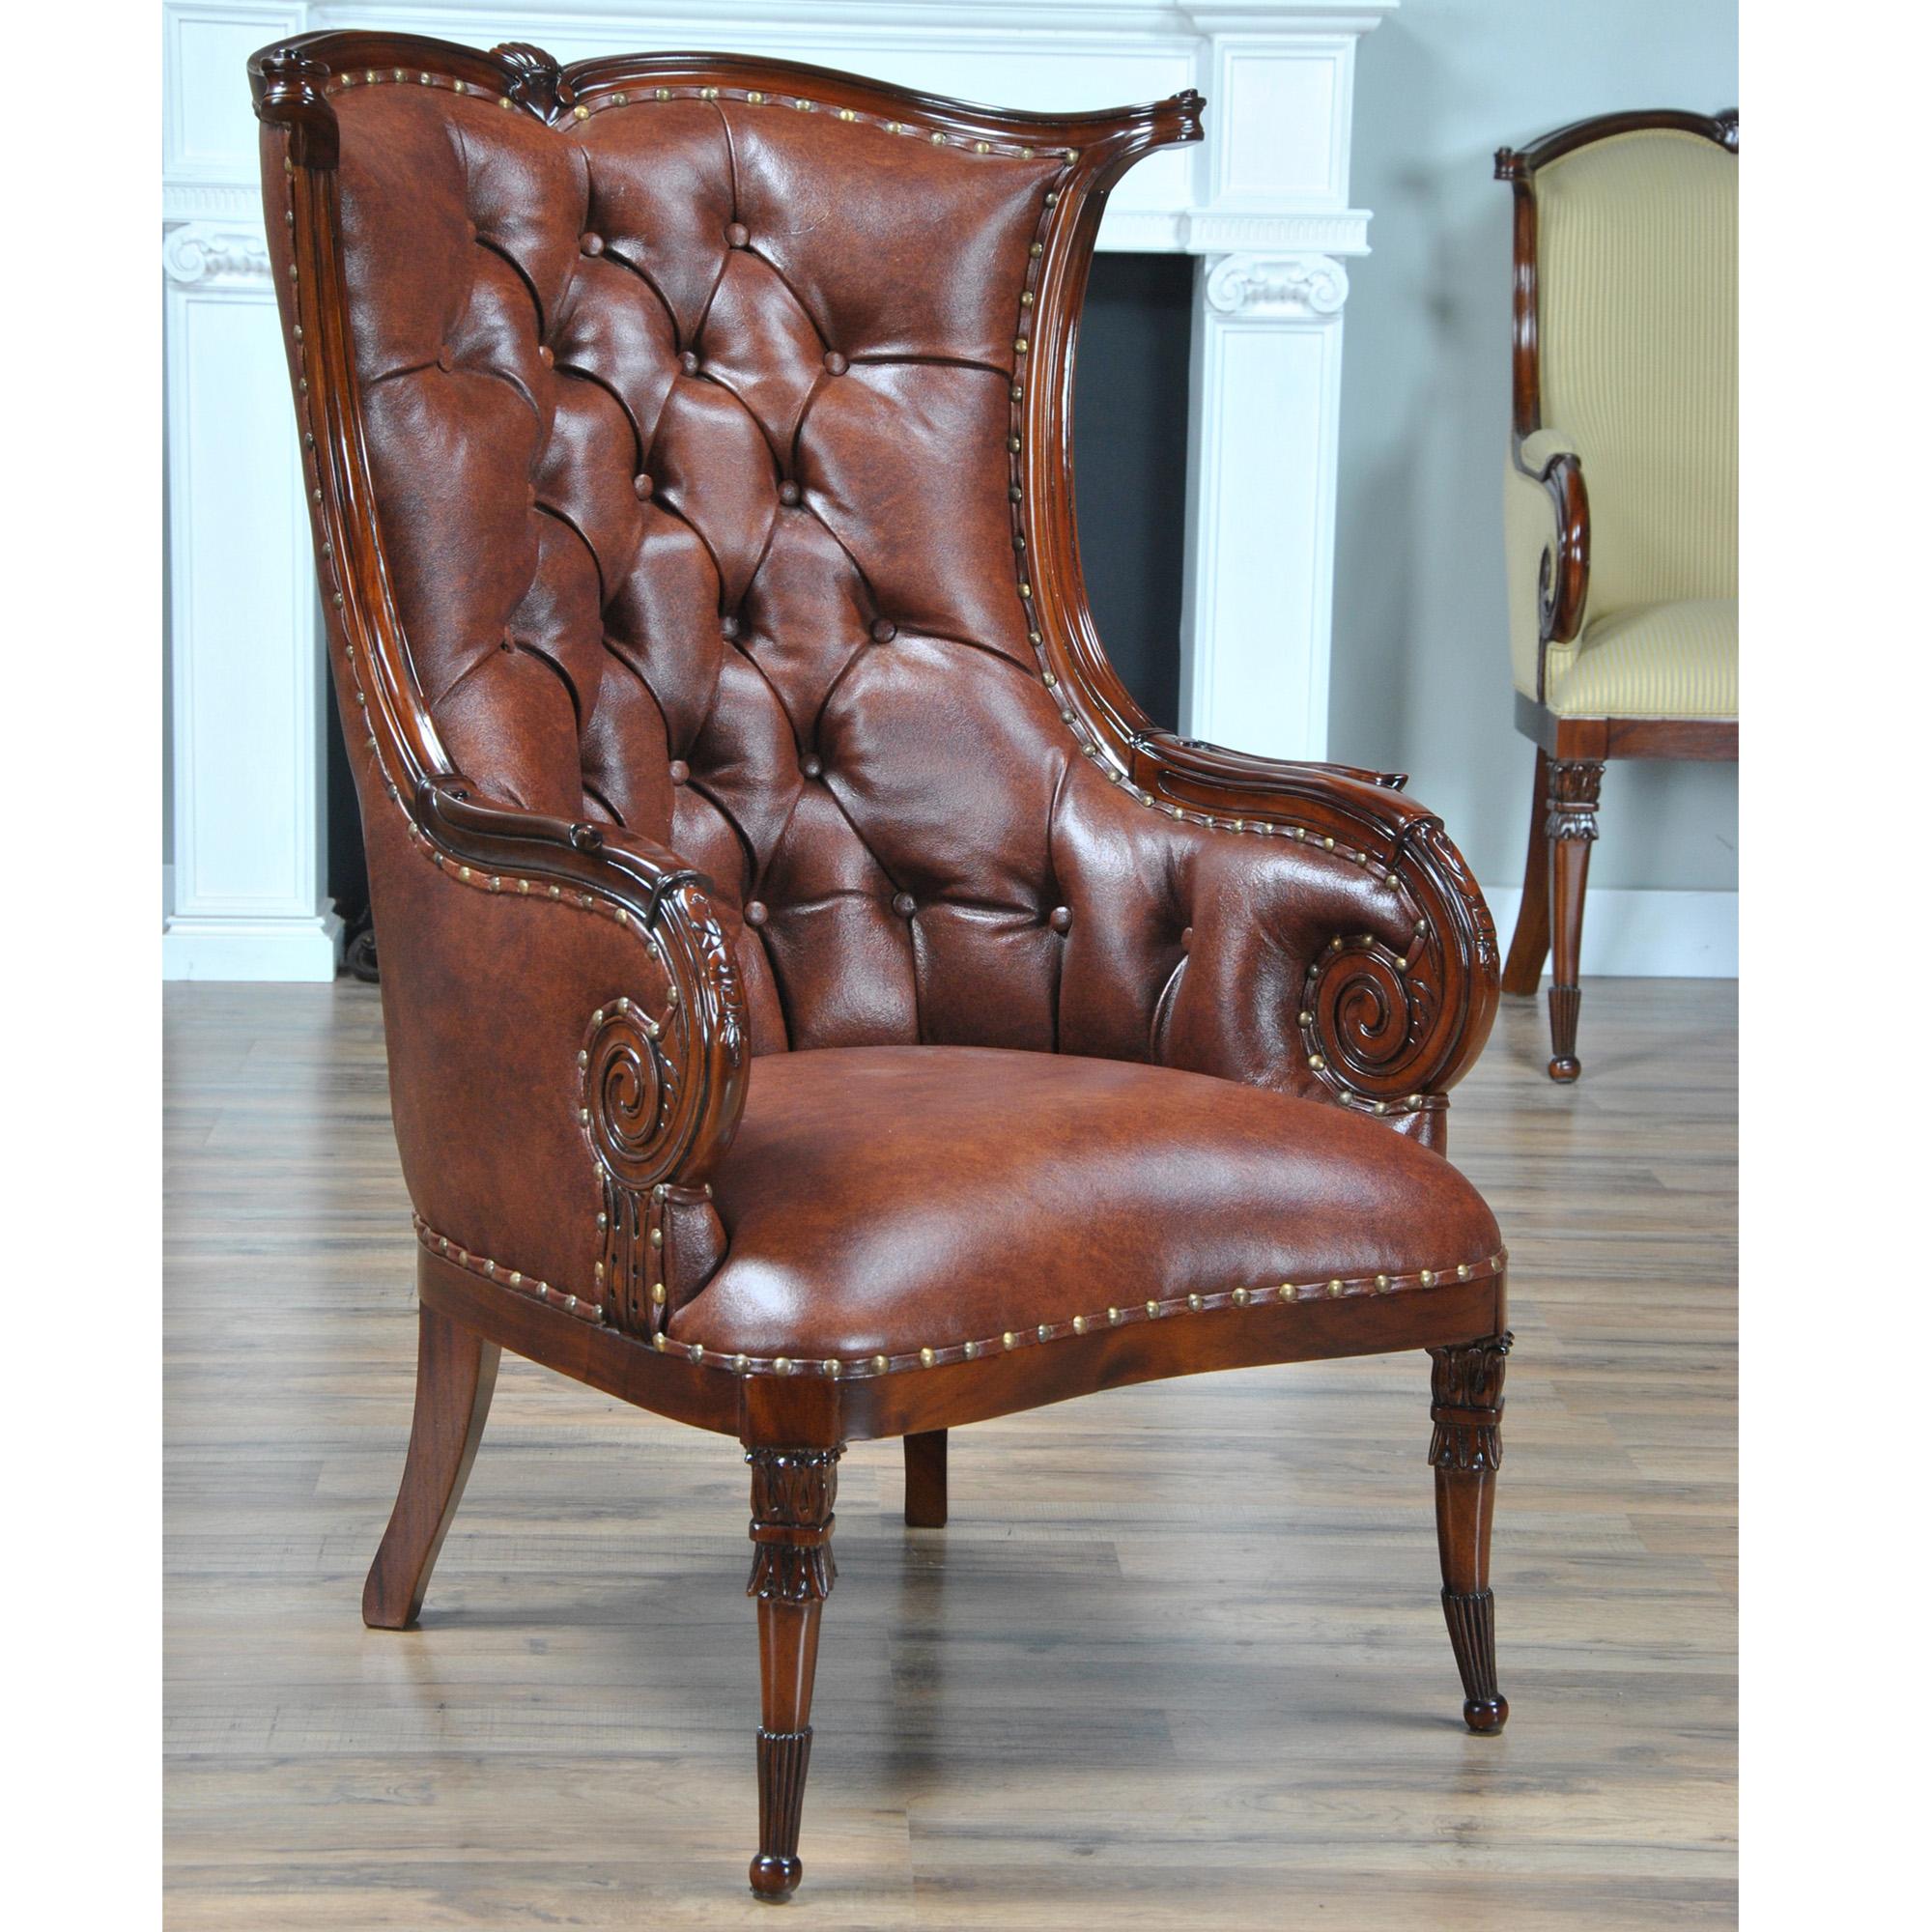 La chaise de cheminée en cuir de Niagara Furniture est conçue d'après une chaise antique américaine originale et est livrée recouverte de cuir véritable grainé et touffeté avec une garniture de clous en laiton. Cette reproduction antique présente